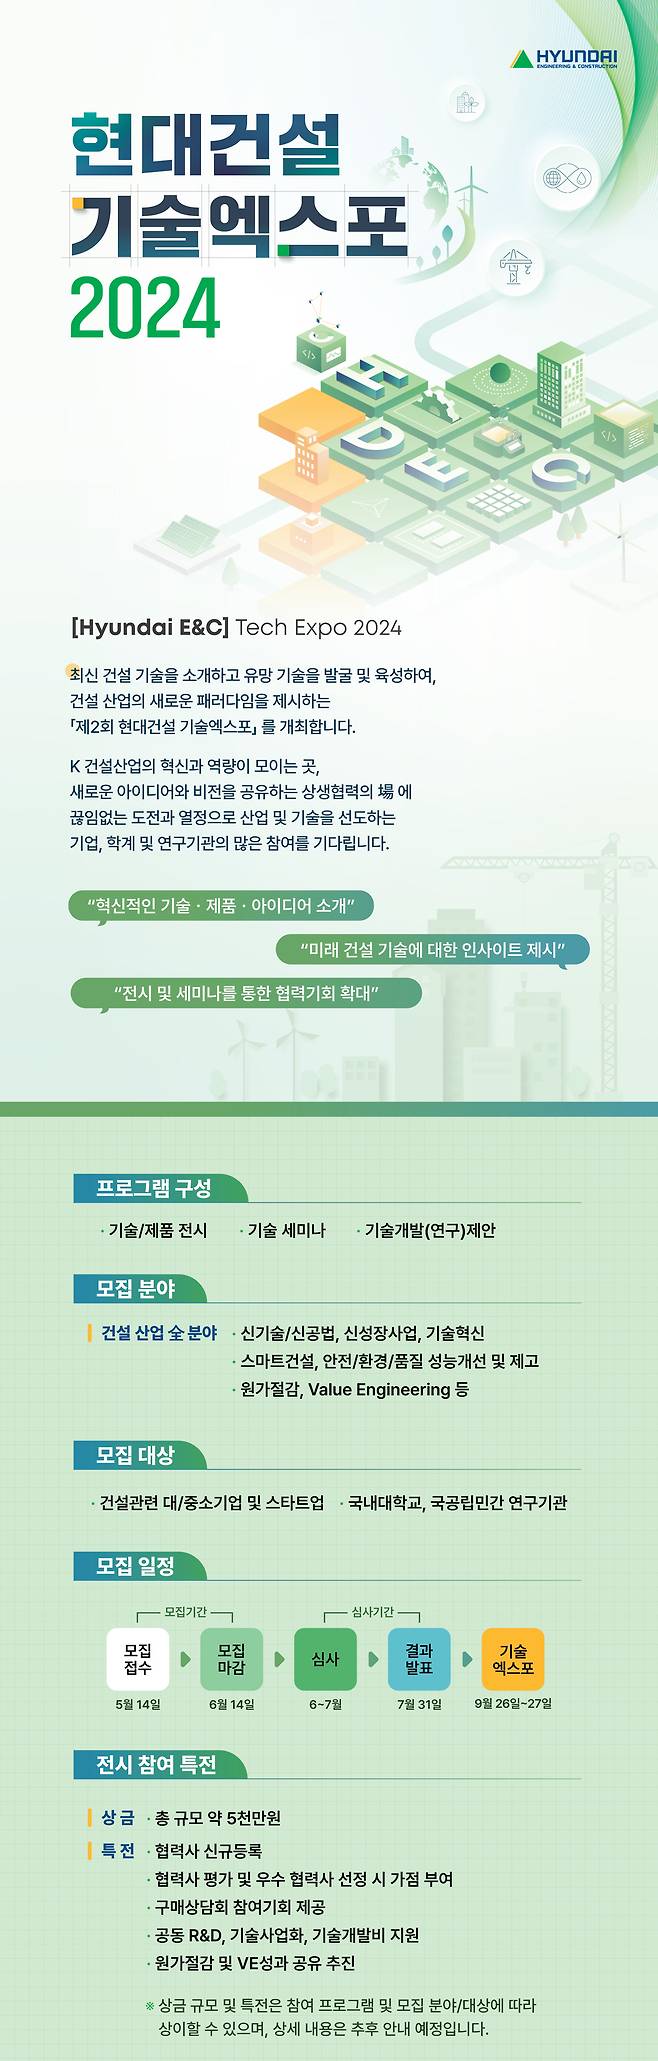 현대건설 기술엑스포 2024 참여 모집 포스터.(현대건설 제공)